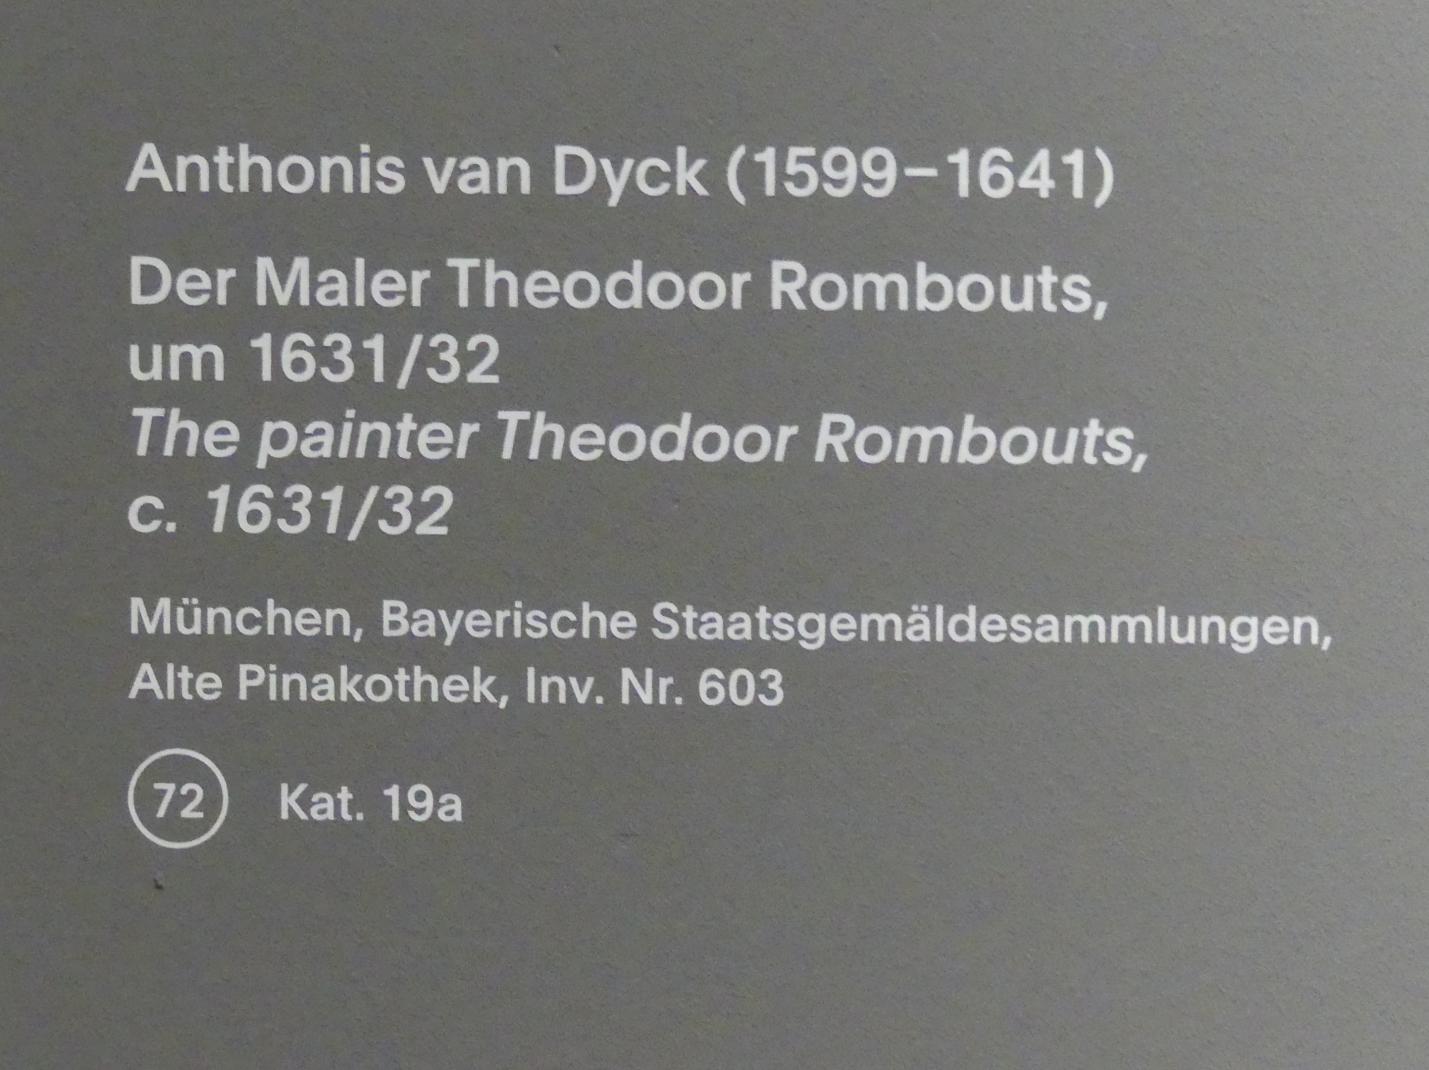 Anthonis (Anton) van Dyck (1614–1641), Der Maler Theodoor Rombouts, München, Alte Pinakothek, Ausstellung "Van Dyck" vom 25.10.2019-02.02.2020, Künstlerbildnisse - 2, um 1631–1632, Bild 2/2